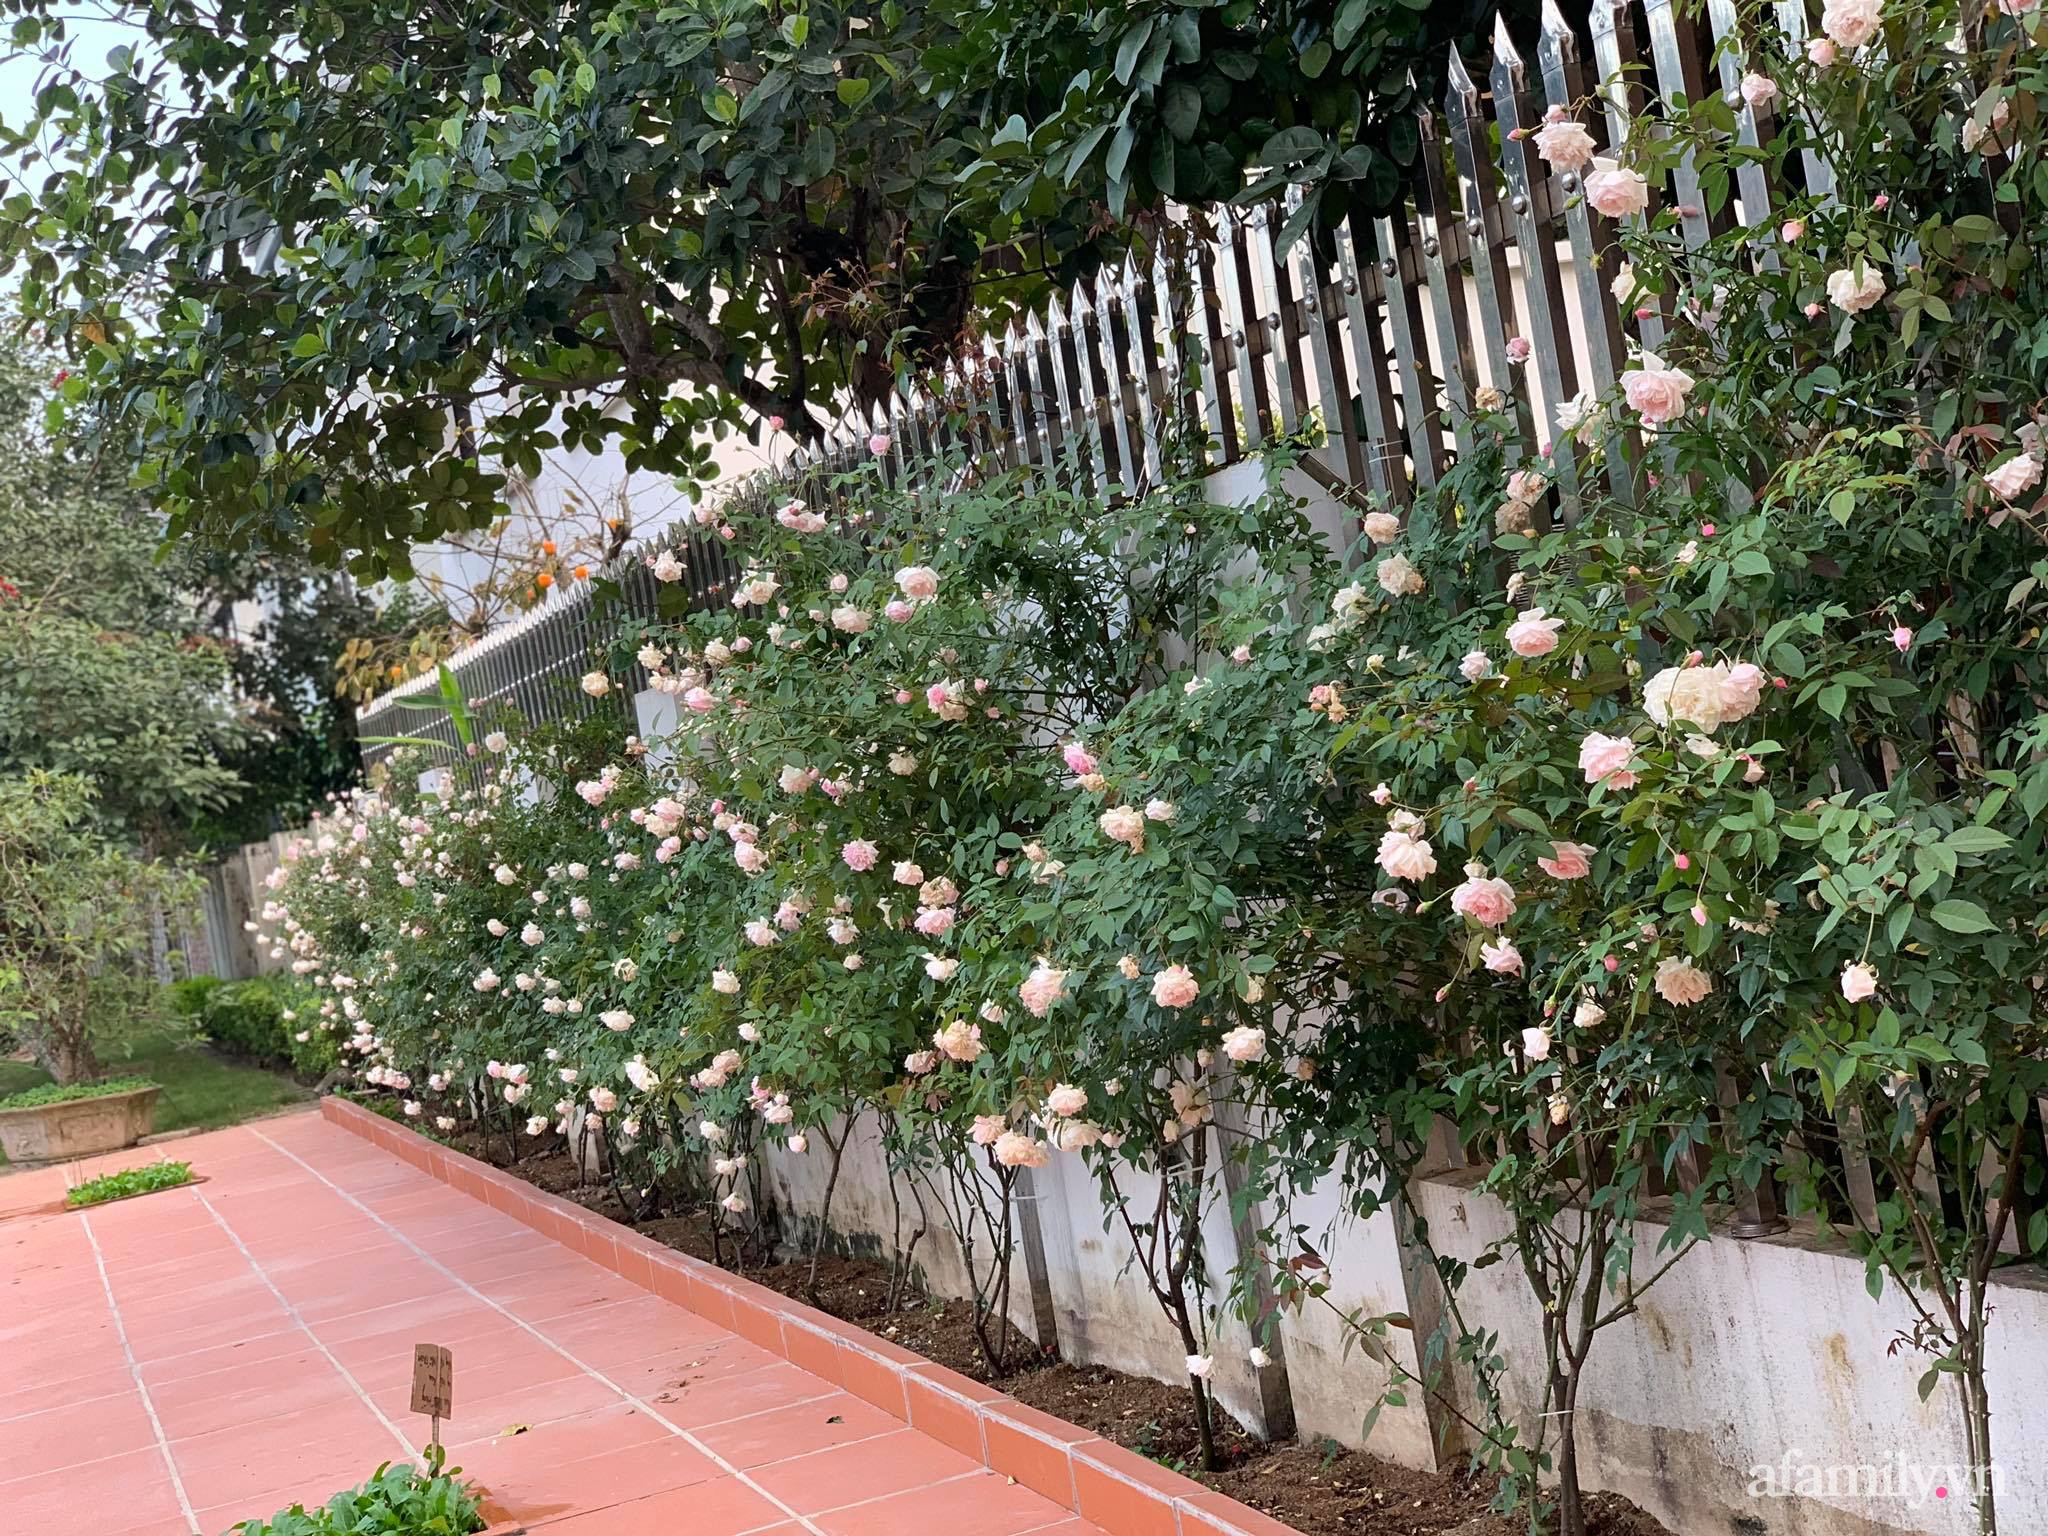 Ngôi nhà quanh năm rực rỡ sắc hương hoa hồng và đủ loại cây ăn quả ở Hà Nội - Ảnh 3.